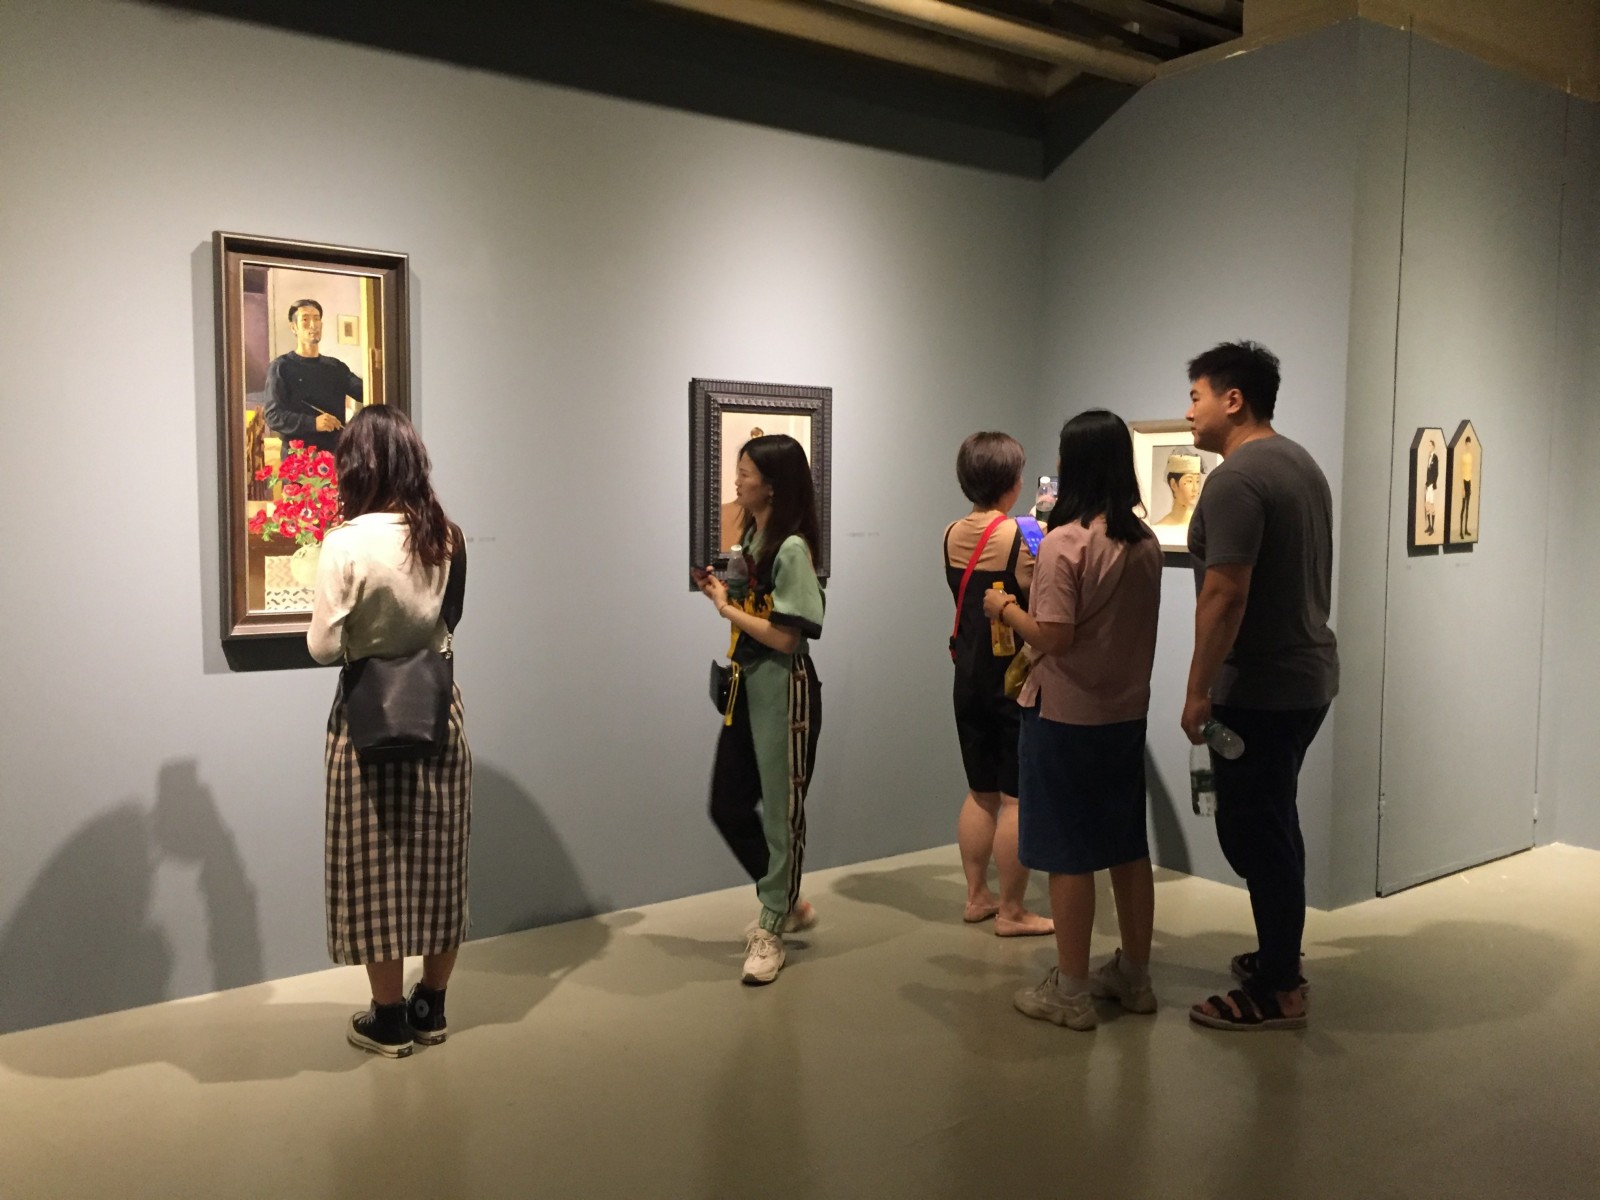 中国油画院正心观物 · 芃芃绘画作品展和学而时习·尤勇画展展出